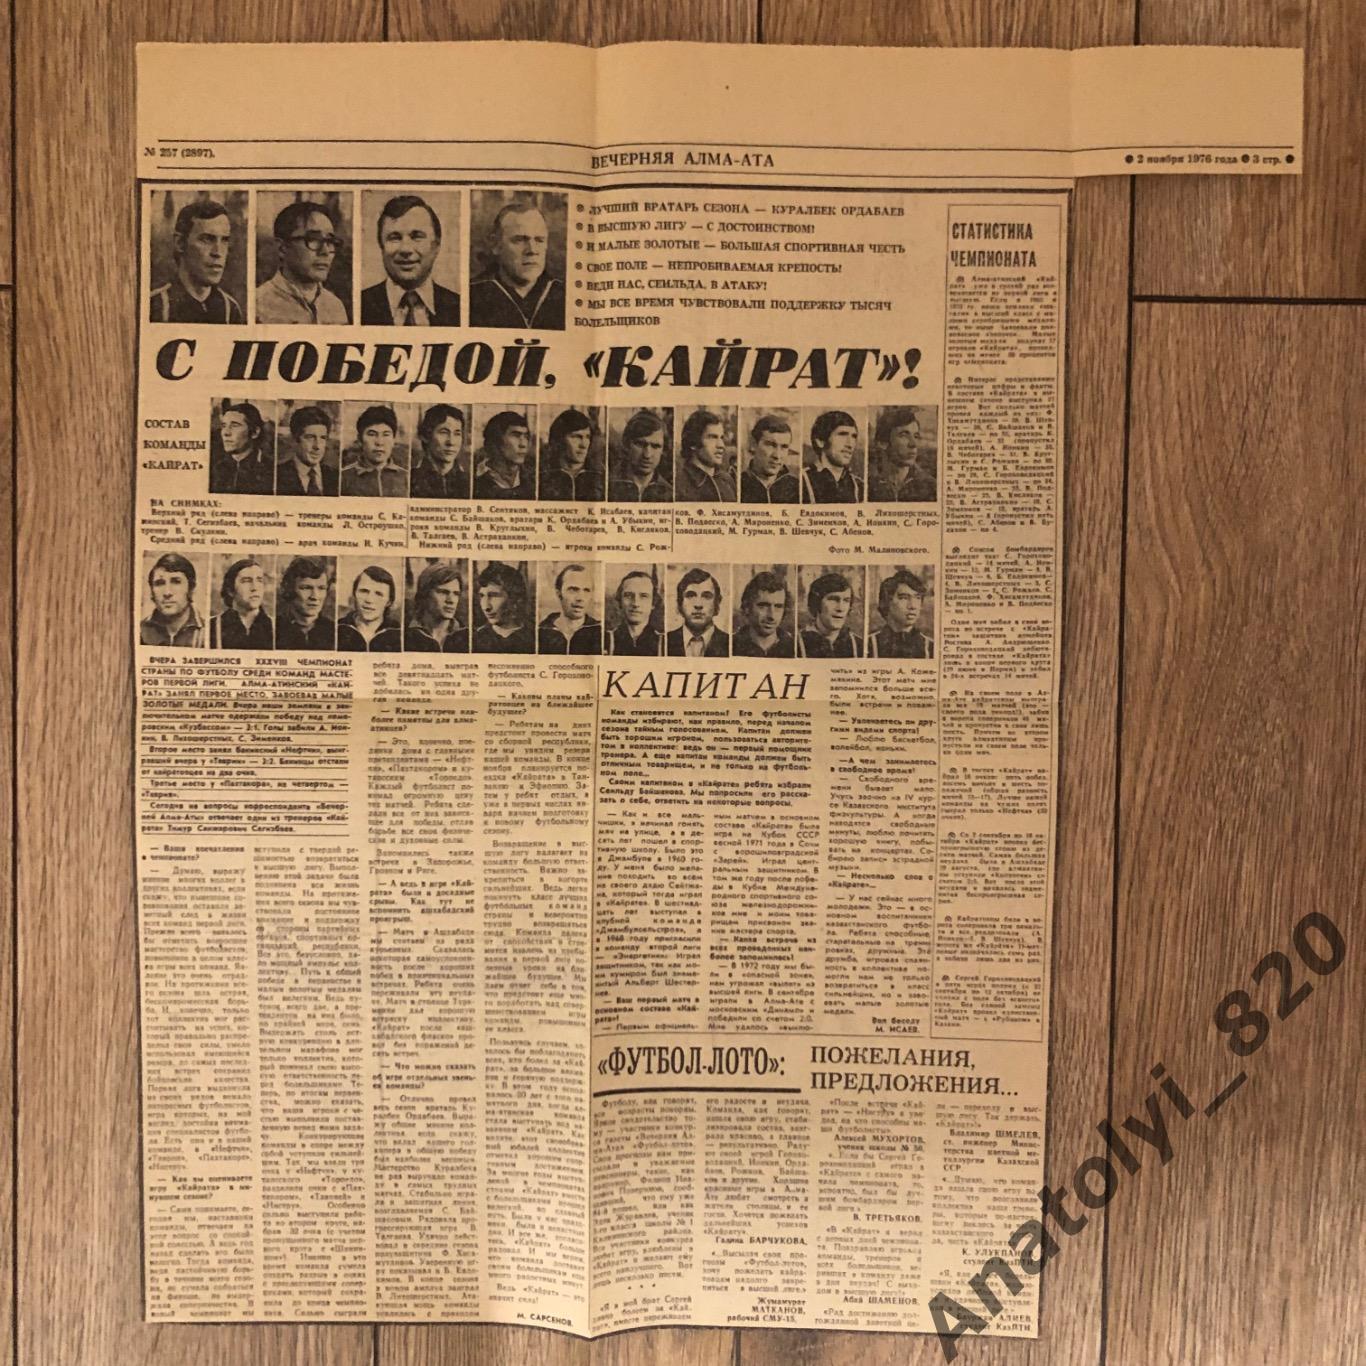 Вырезка из газеты Вечерняя Алма-Ата от 02.11.1976, «С победой Кайрат»!